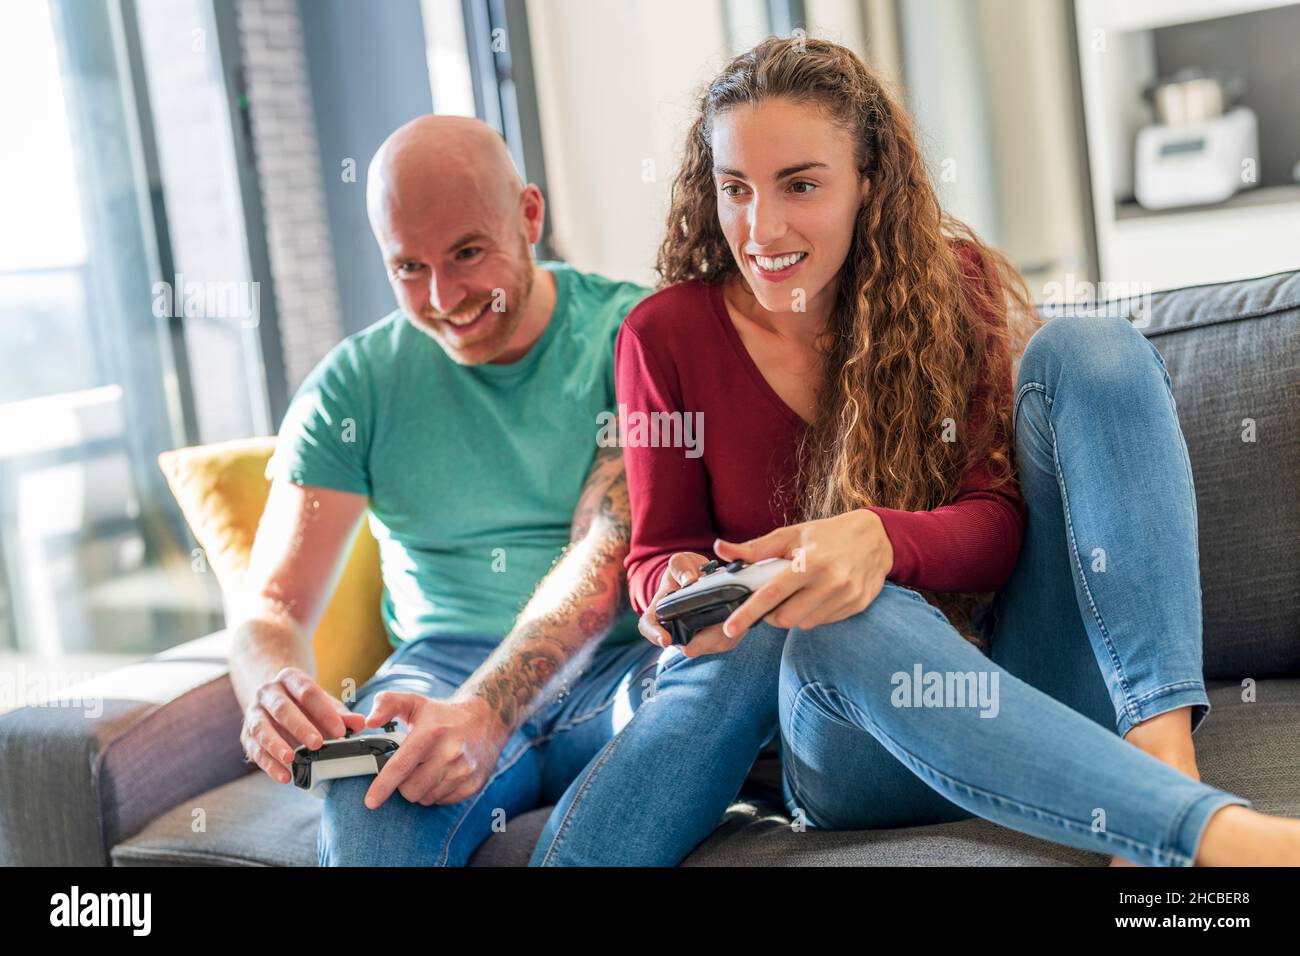 Pareja sonriente con el mando de videojuegos jugando en el sofá Foto de stock